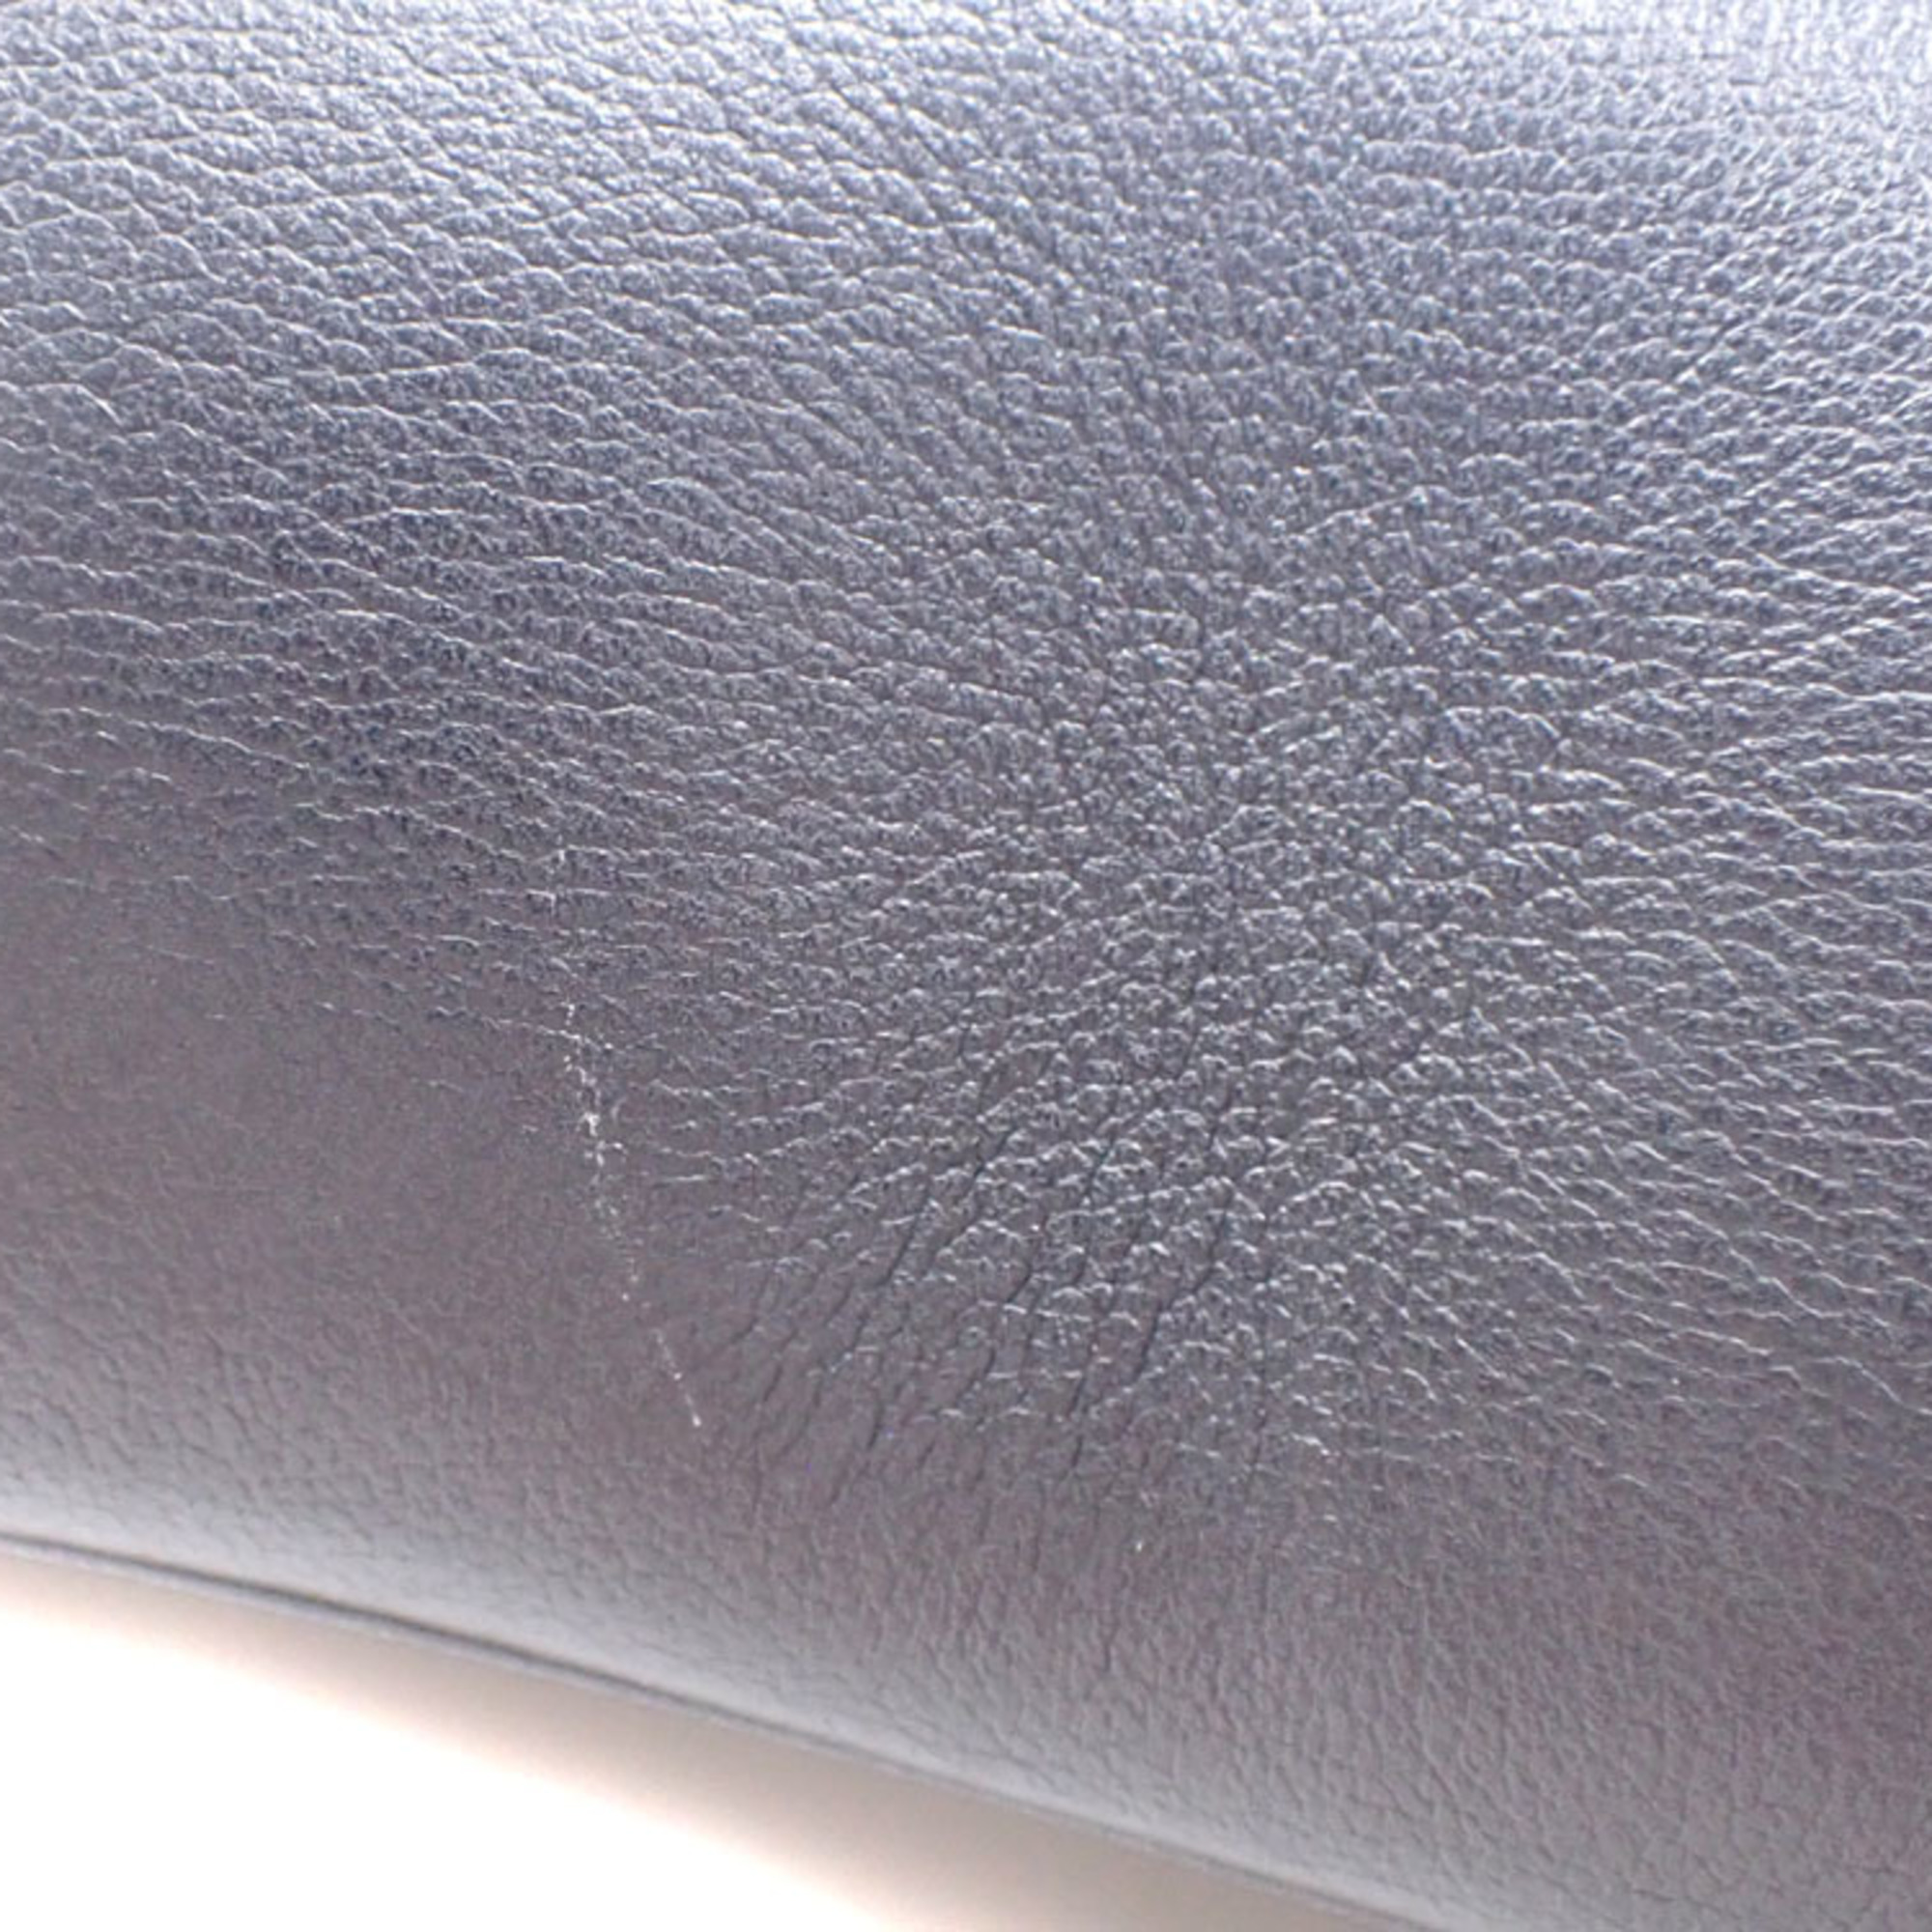 Louis Vuitton Shoulder Bag New Wave Chain MM Women's M51498 Noir Black Hand